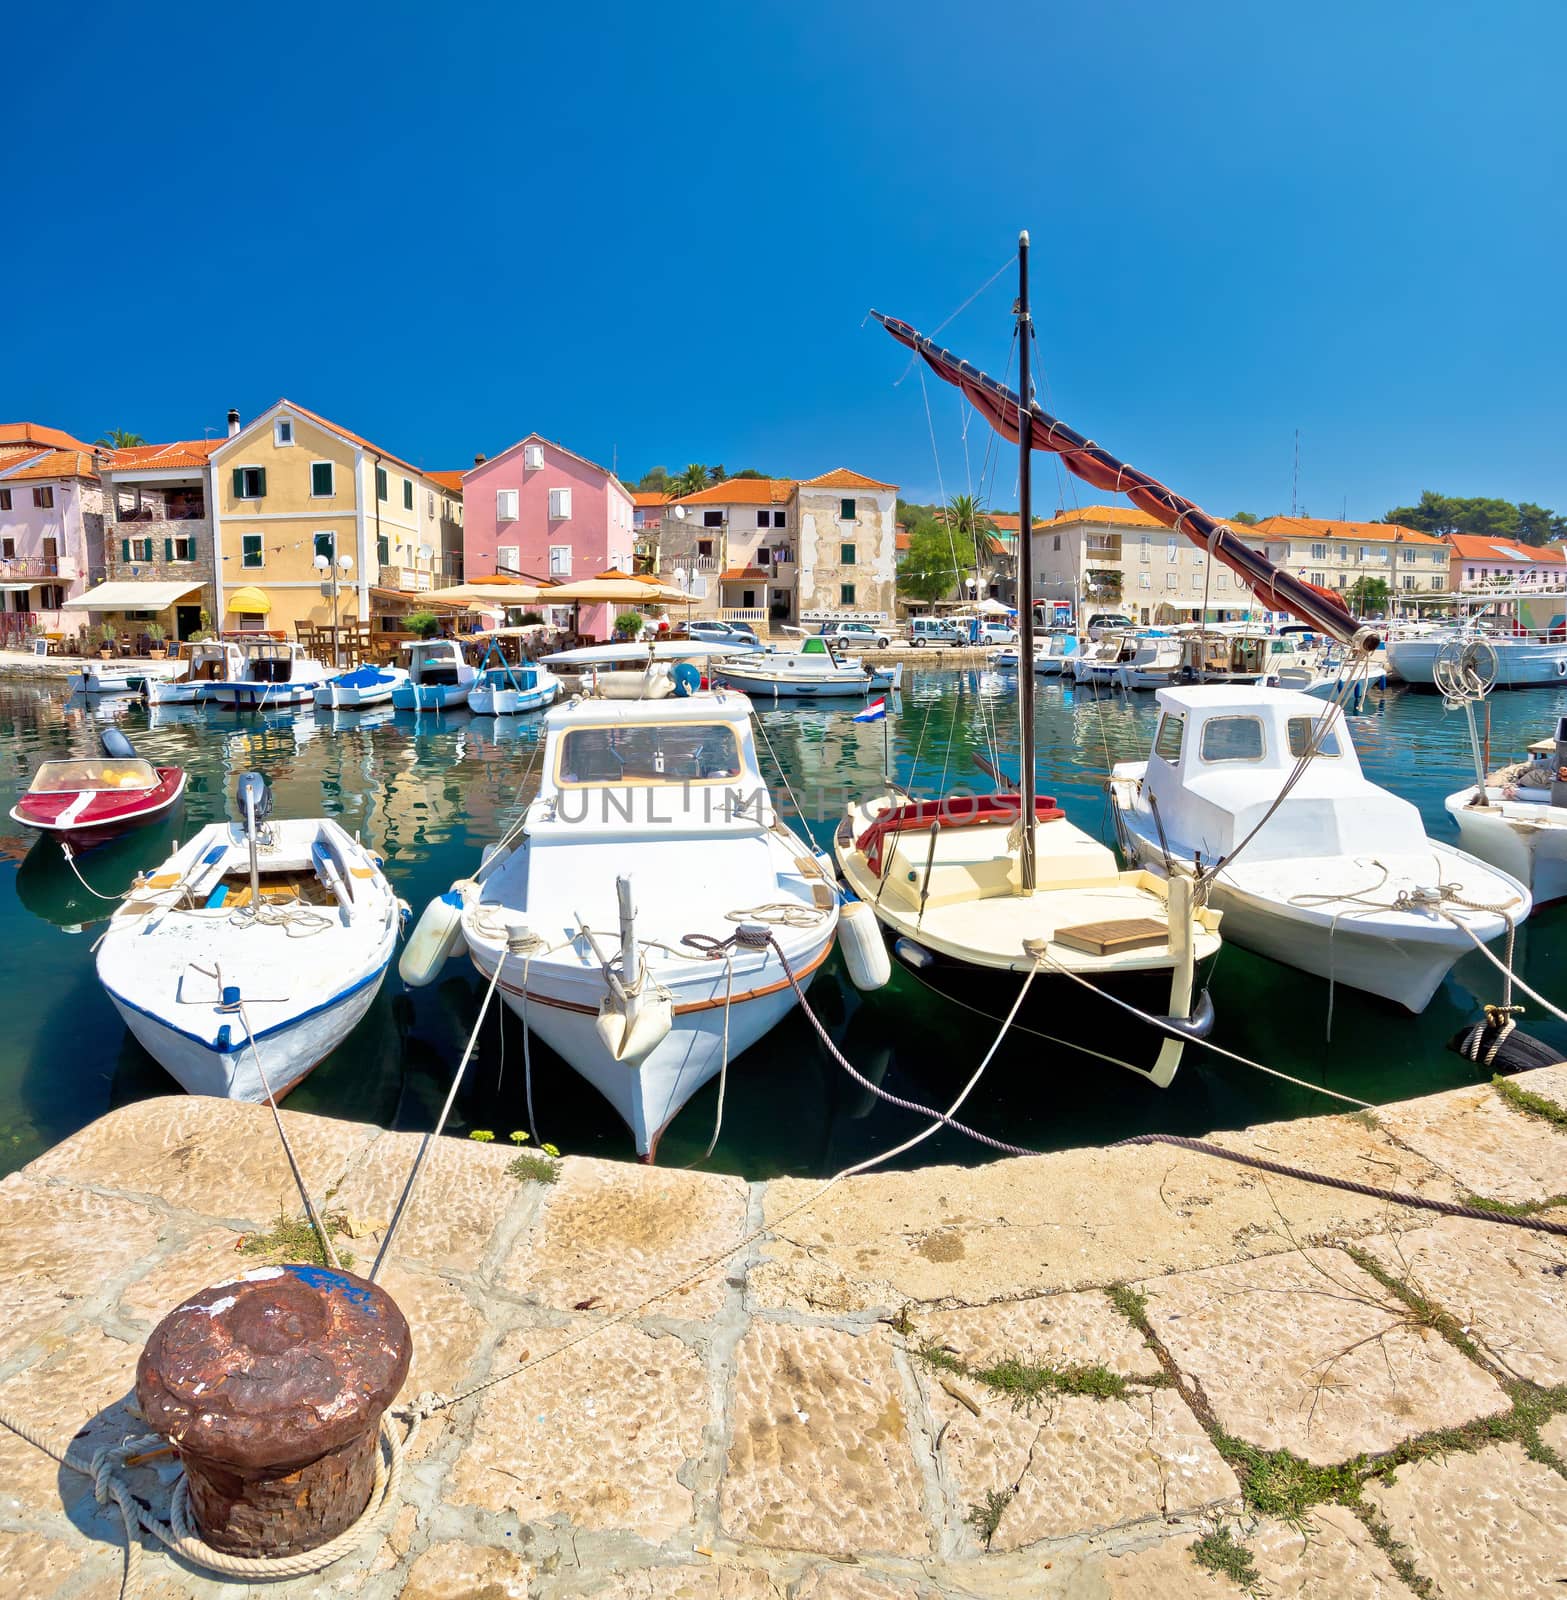 Town of Sali on Dugi otok island, Dalmatia, Croatia